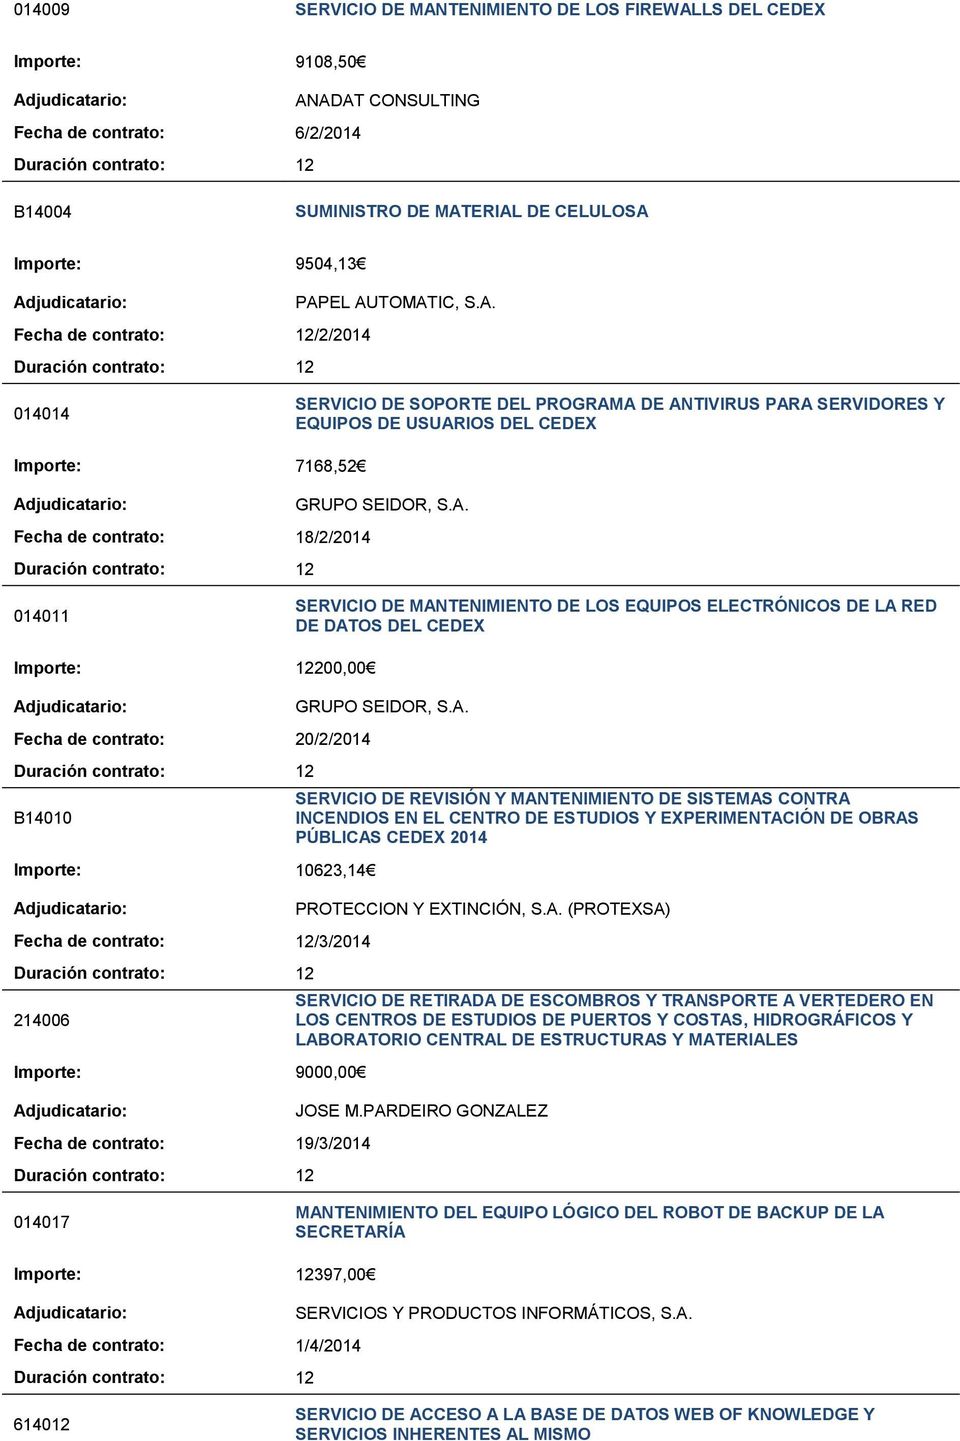 014011 SERVICIO DE MANTENIMIENTO DE LOS EQUIPOS ELECTRÓNICOS DE LA RED DE DATOS DEL CEDEX Importe: 12200,00 Fecha de contrato: 20/2/2014 B14010 Importe: 10623,14 Fecha de contrato: 12/3/2014 214006